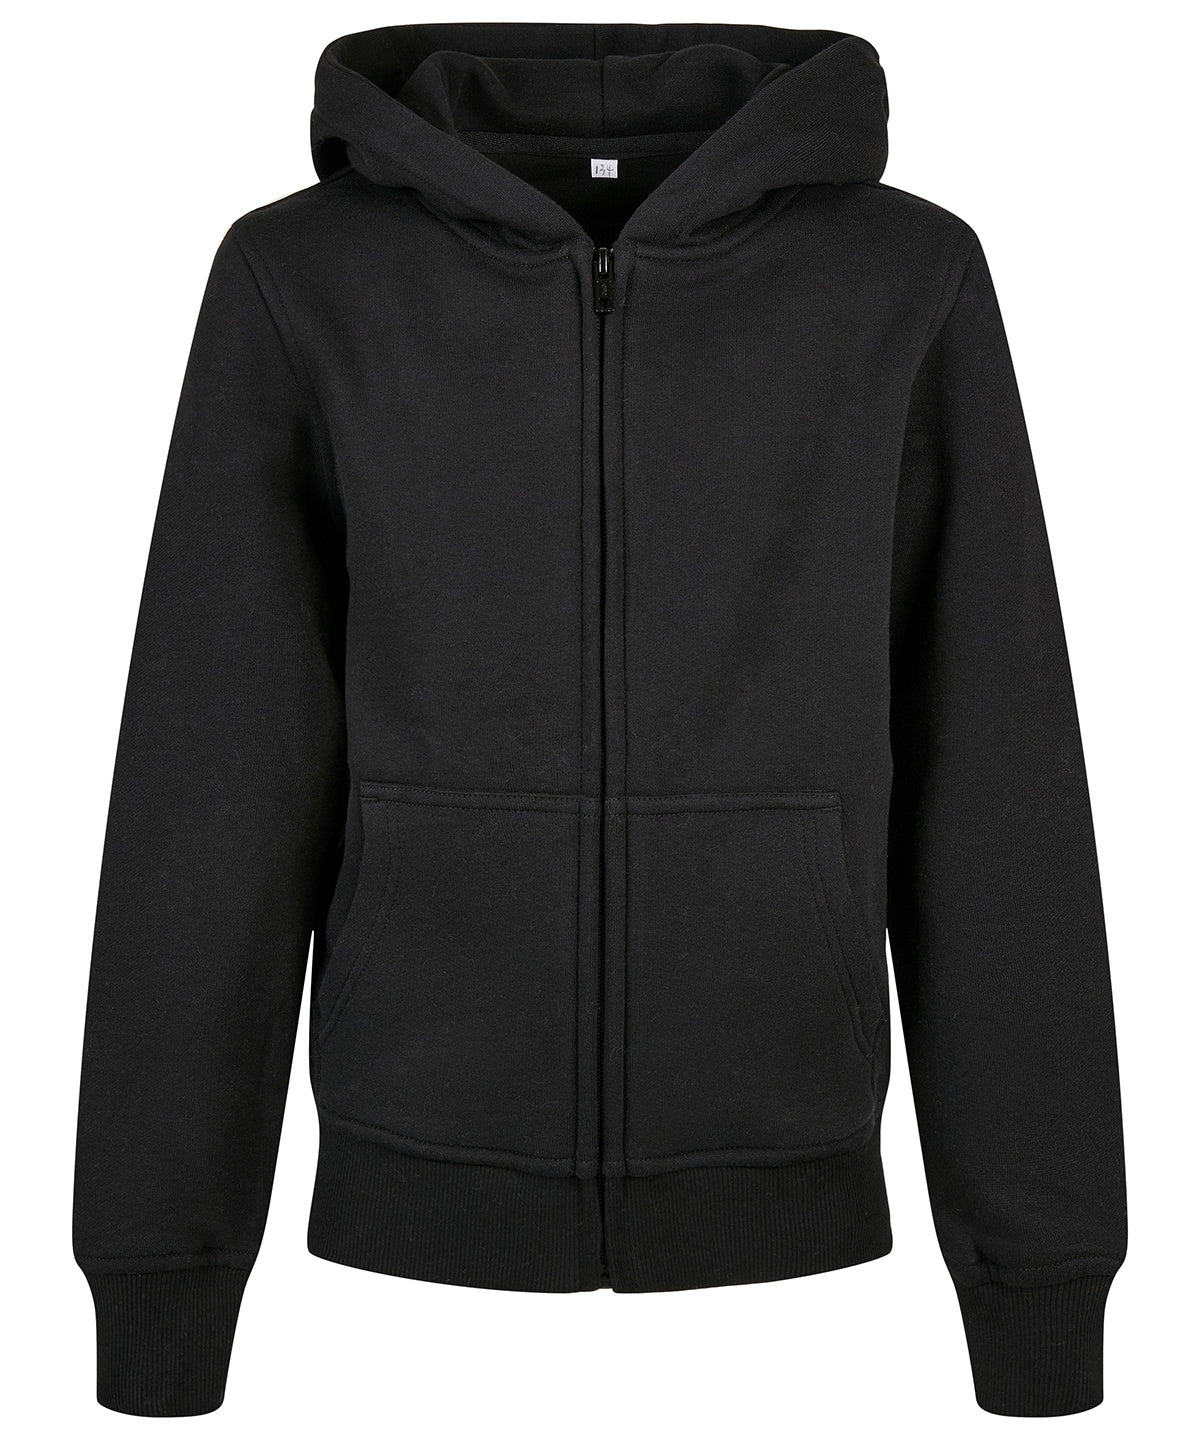 Personalised Hoodies - Black Build Your Brand Organic kids basic zip hoodie